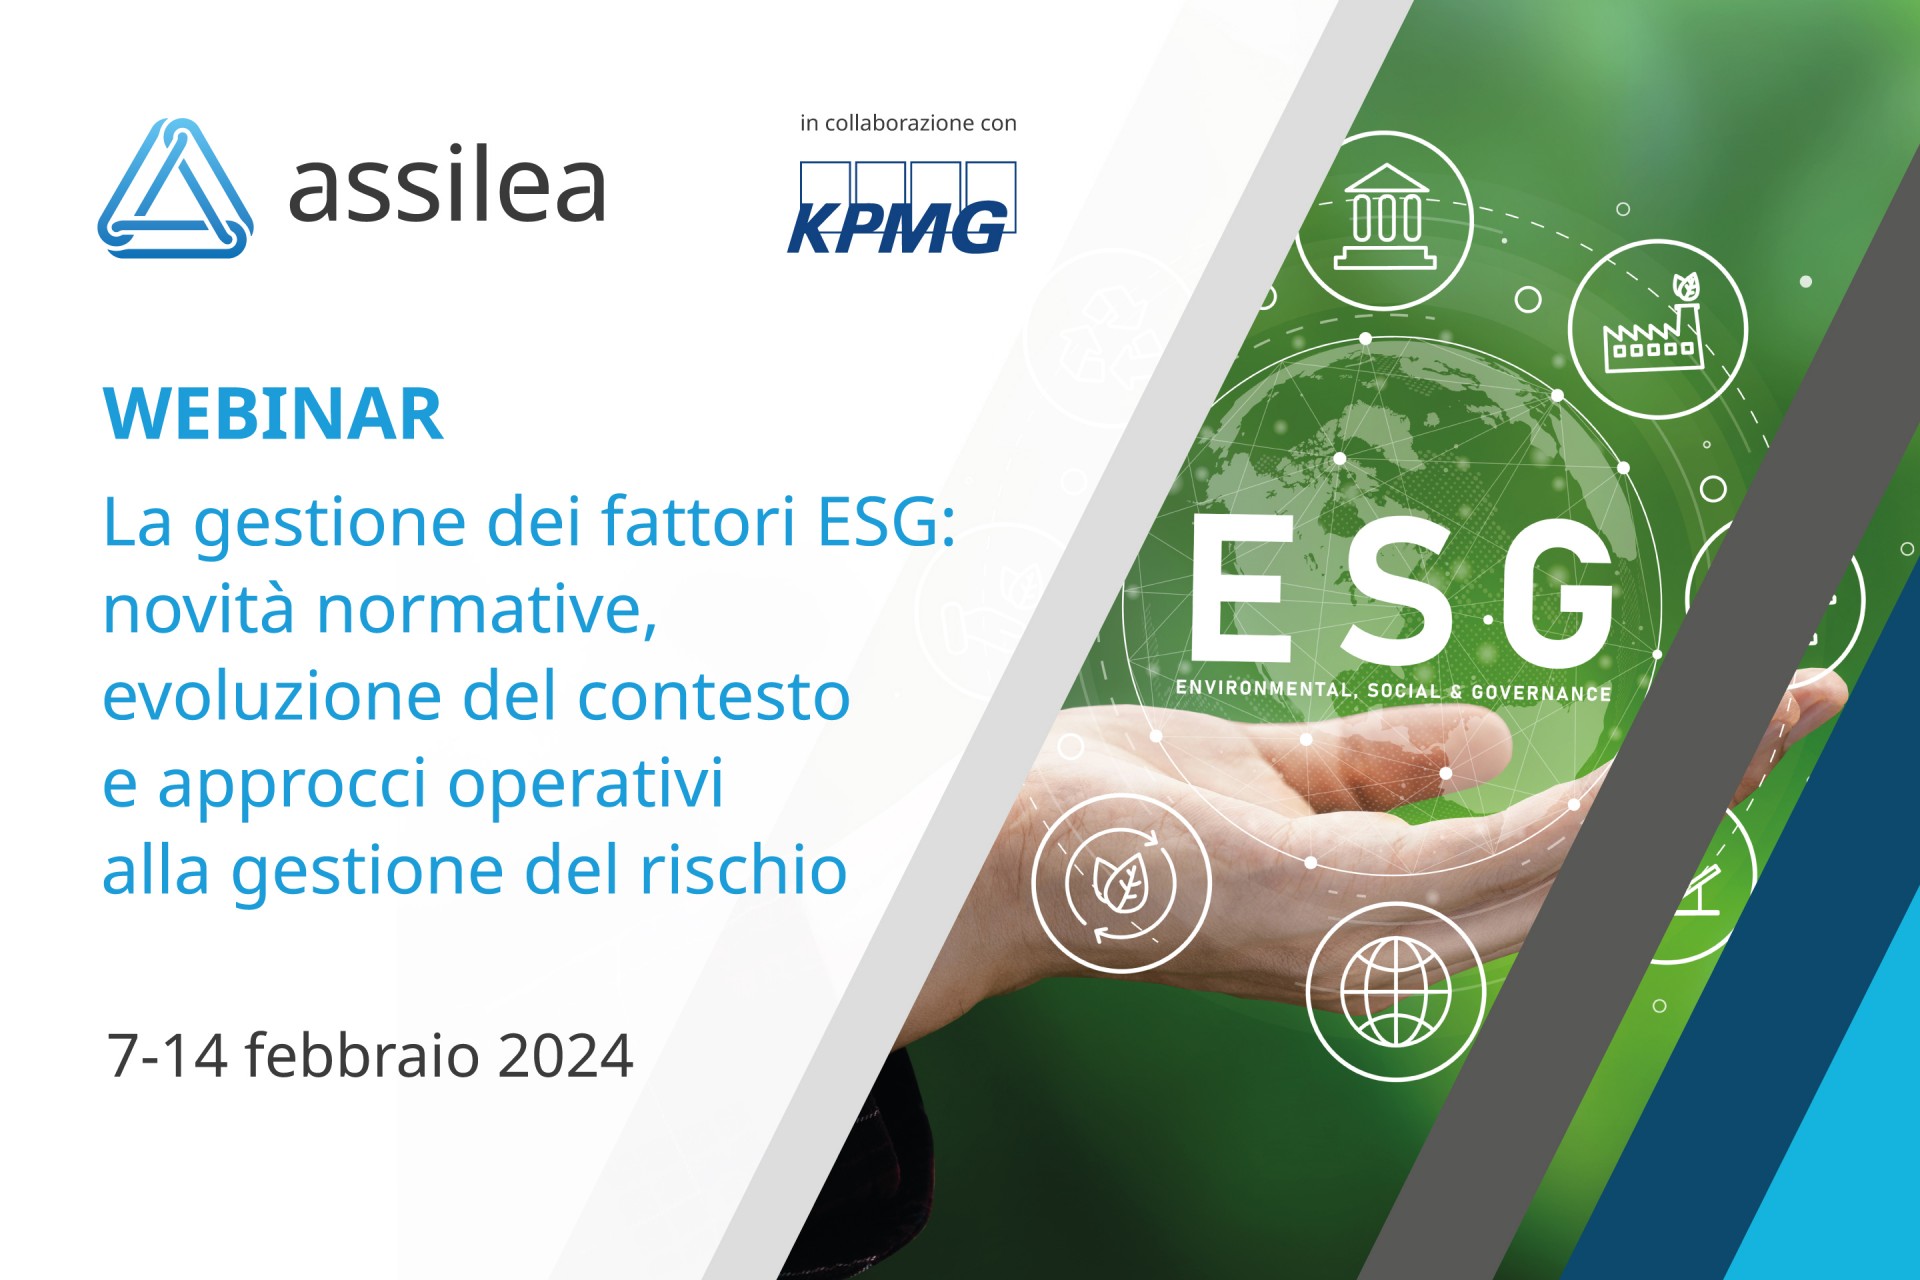 ESG, Assilea: novità normative e approcci operativi